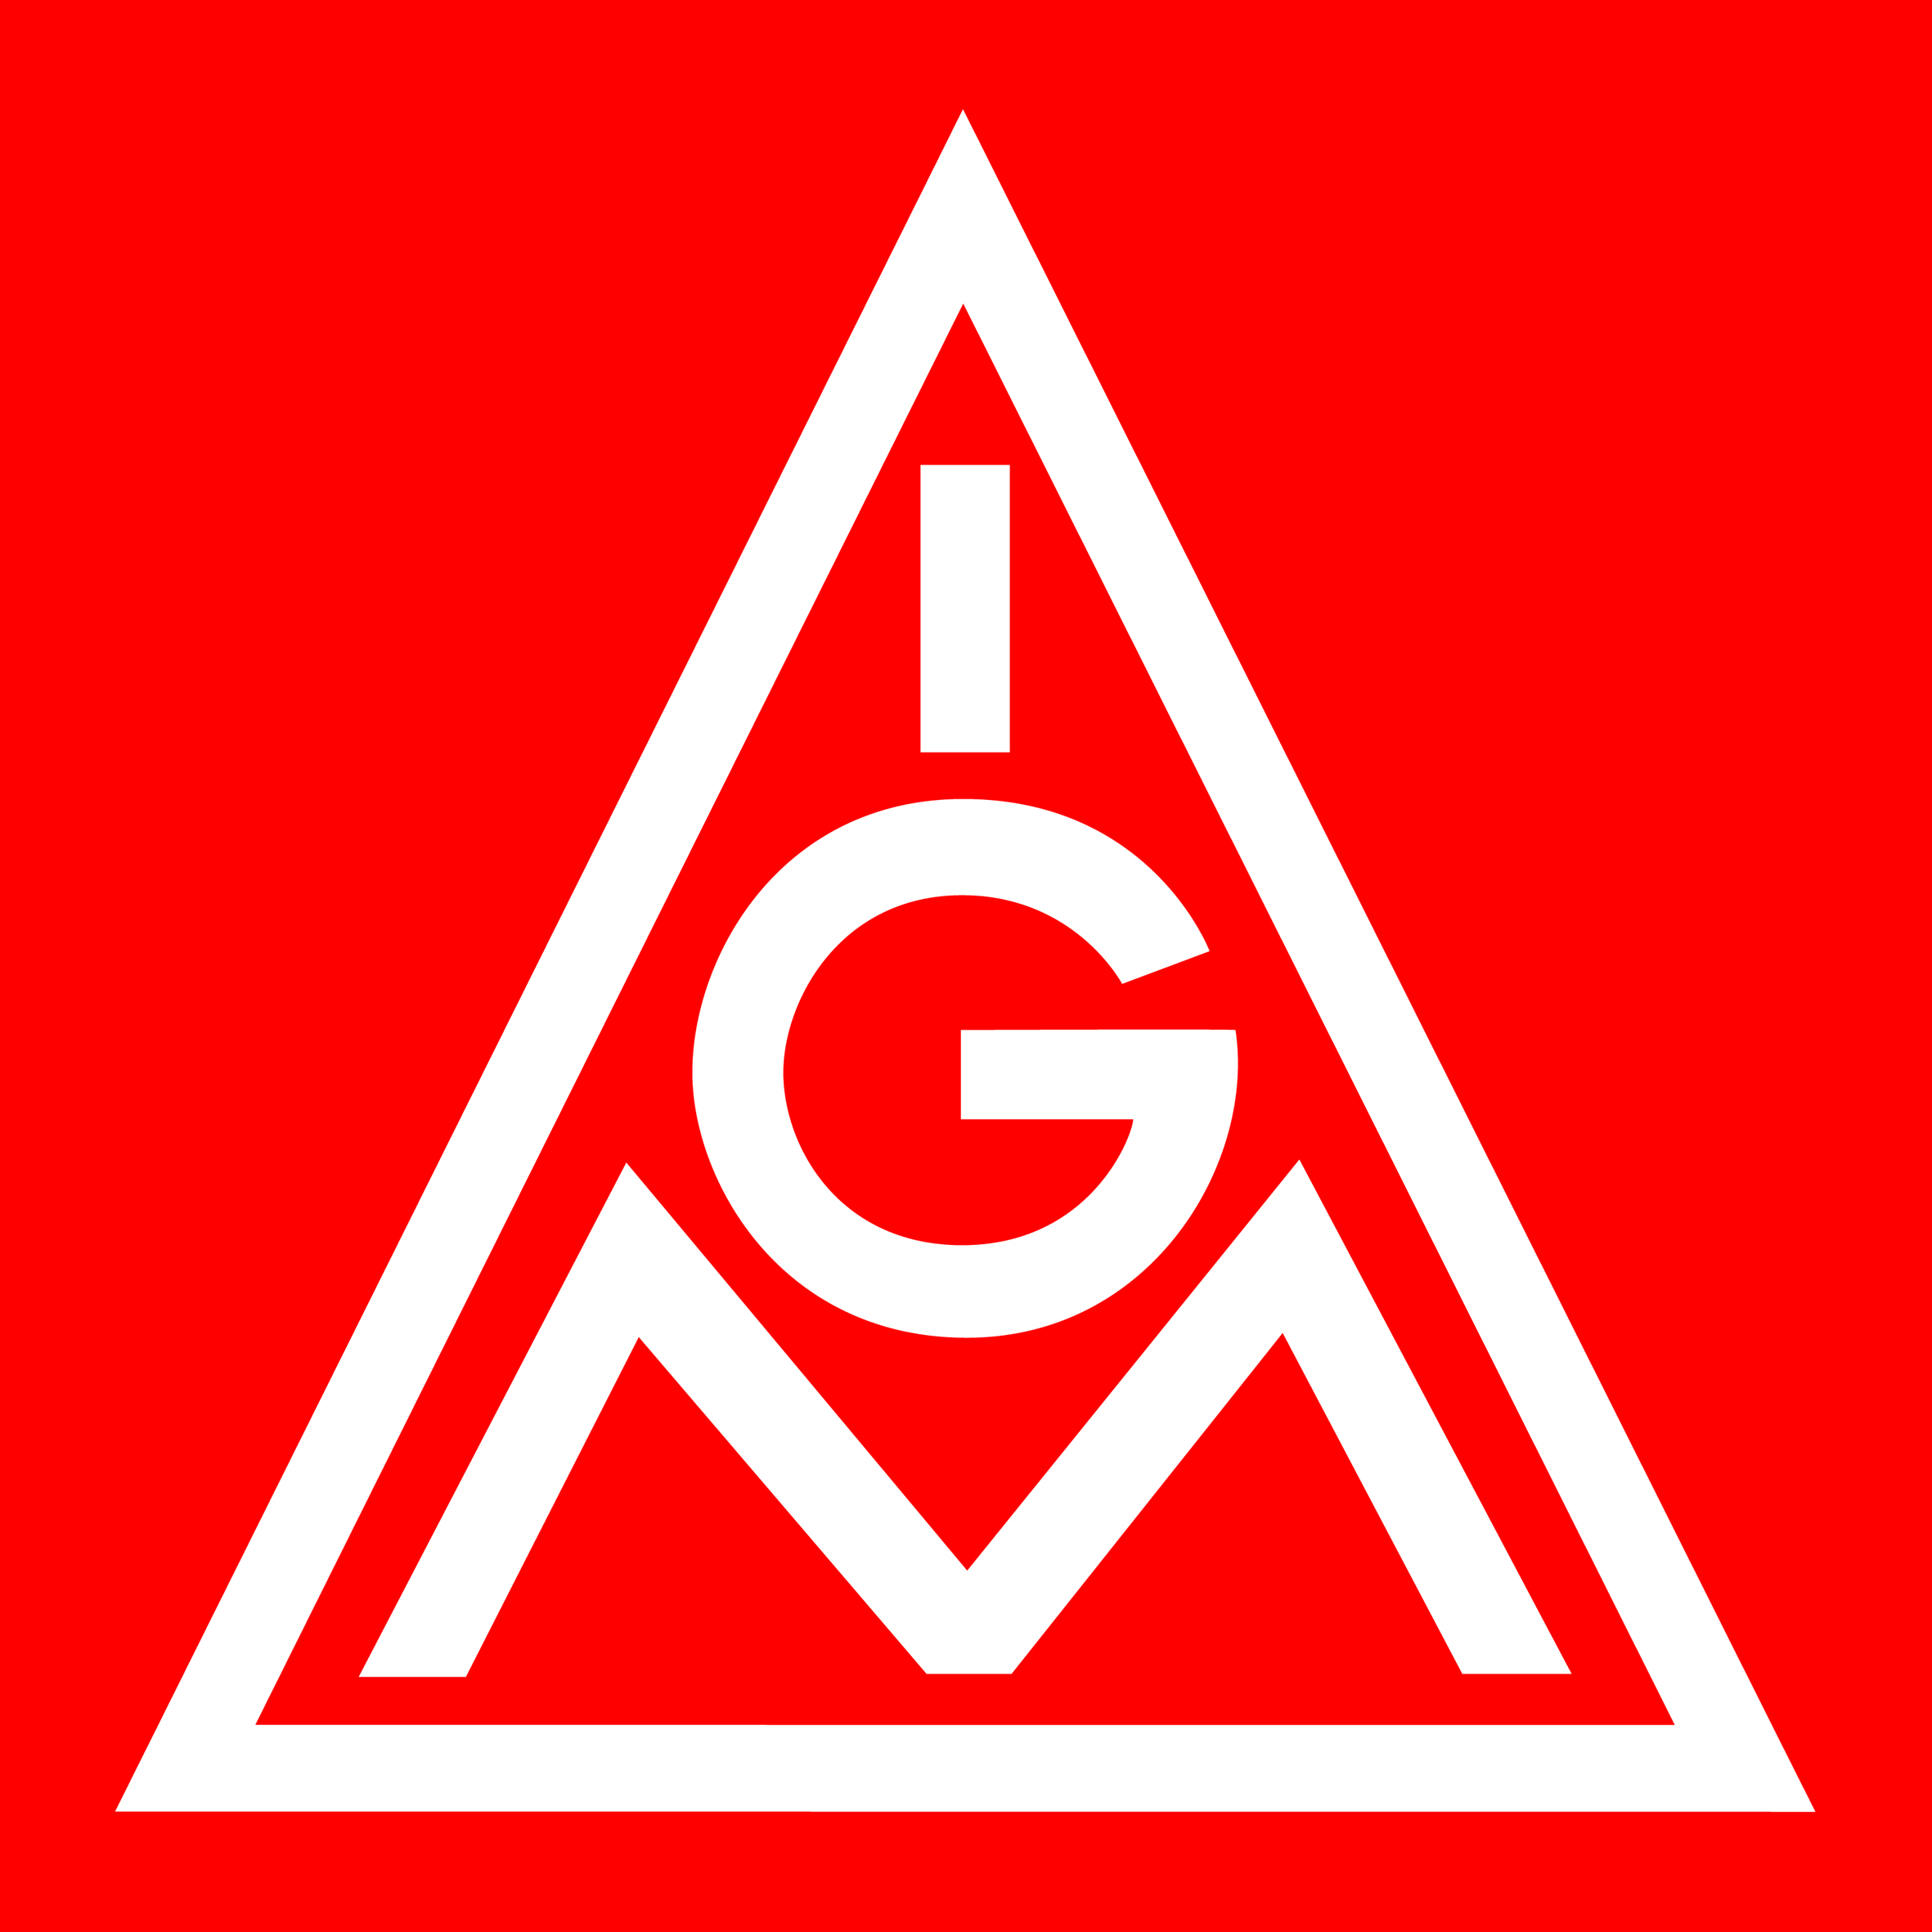 http://igmetall-schaeffler.de/fileadmin/01_Redaktion_Schaeffler/02-Downloads/logos/IGM.jpg